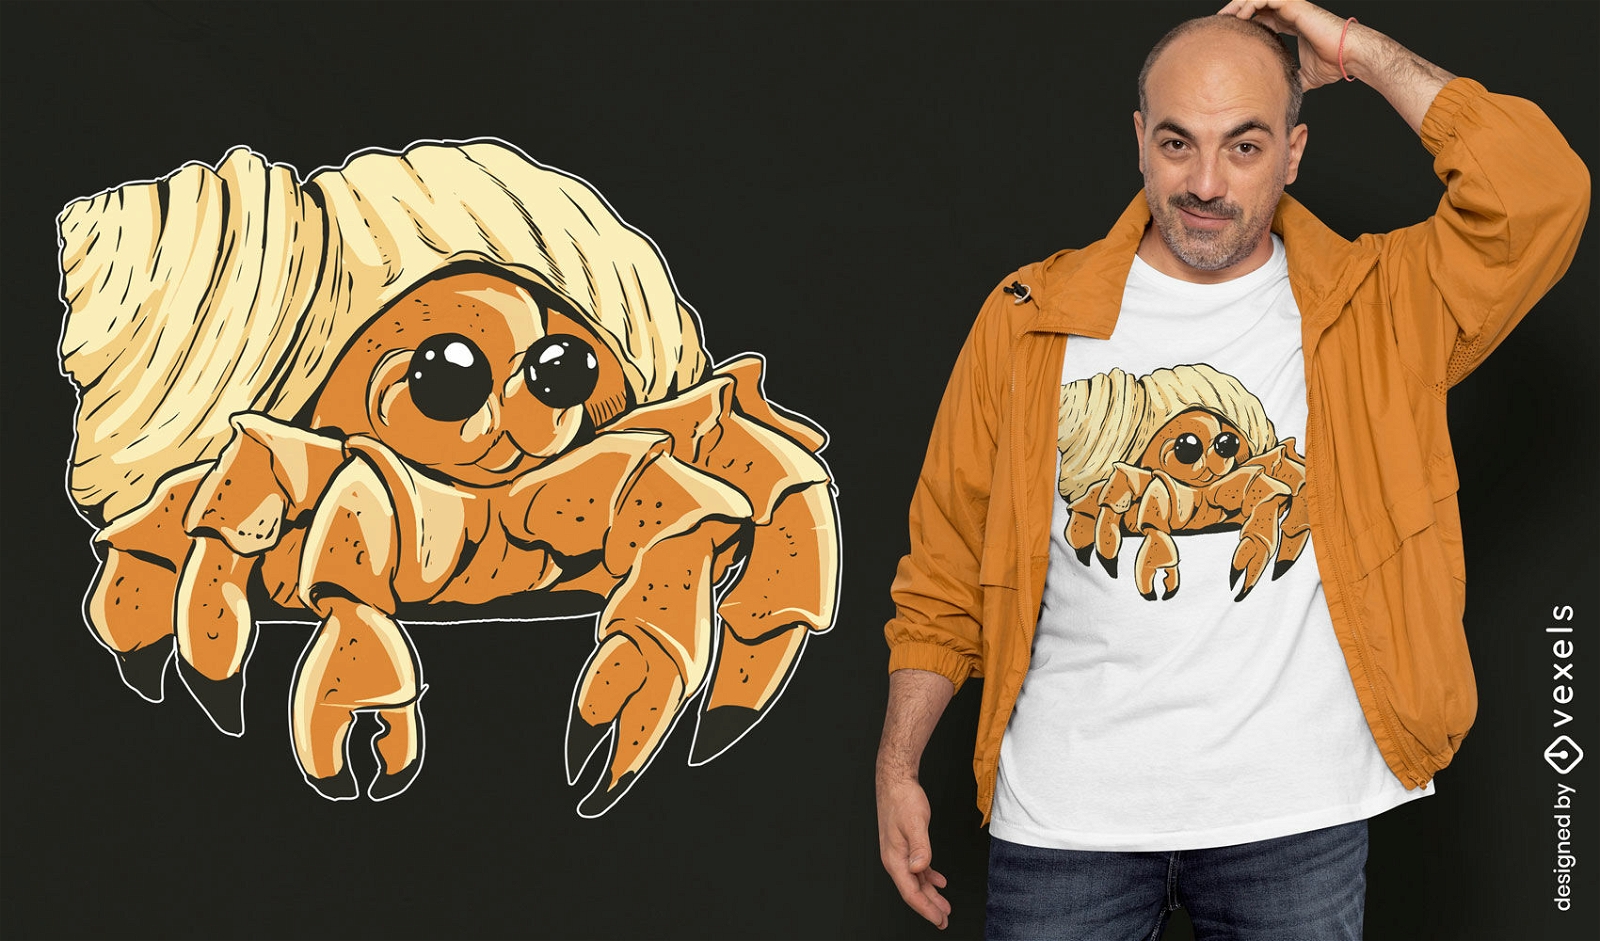 Hermit crab little animal t-shirt design